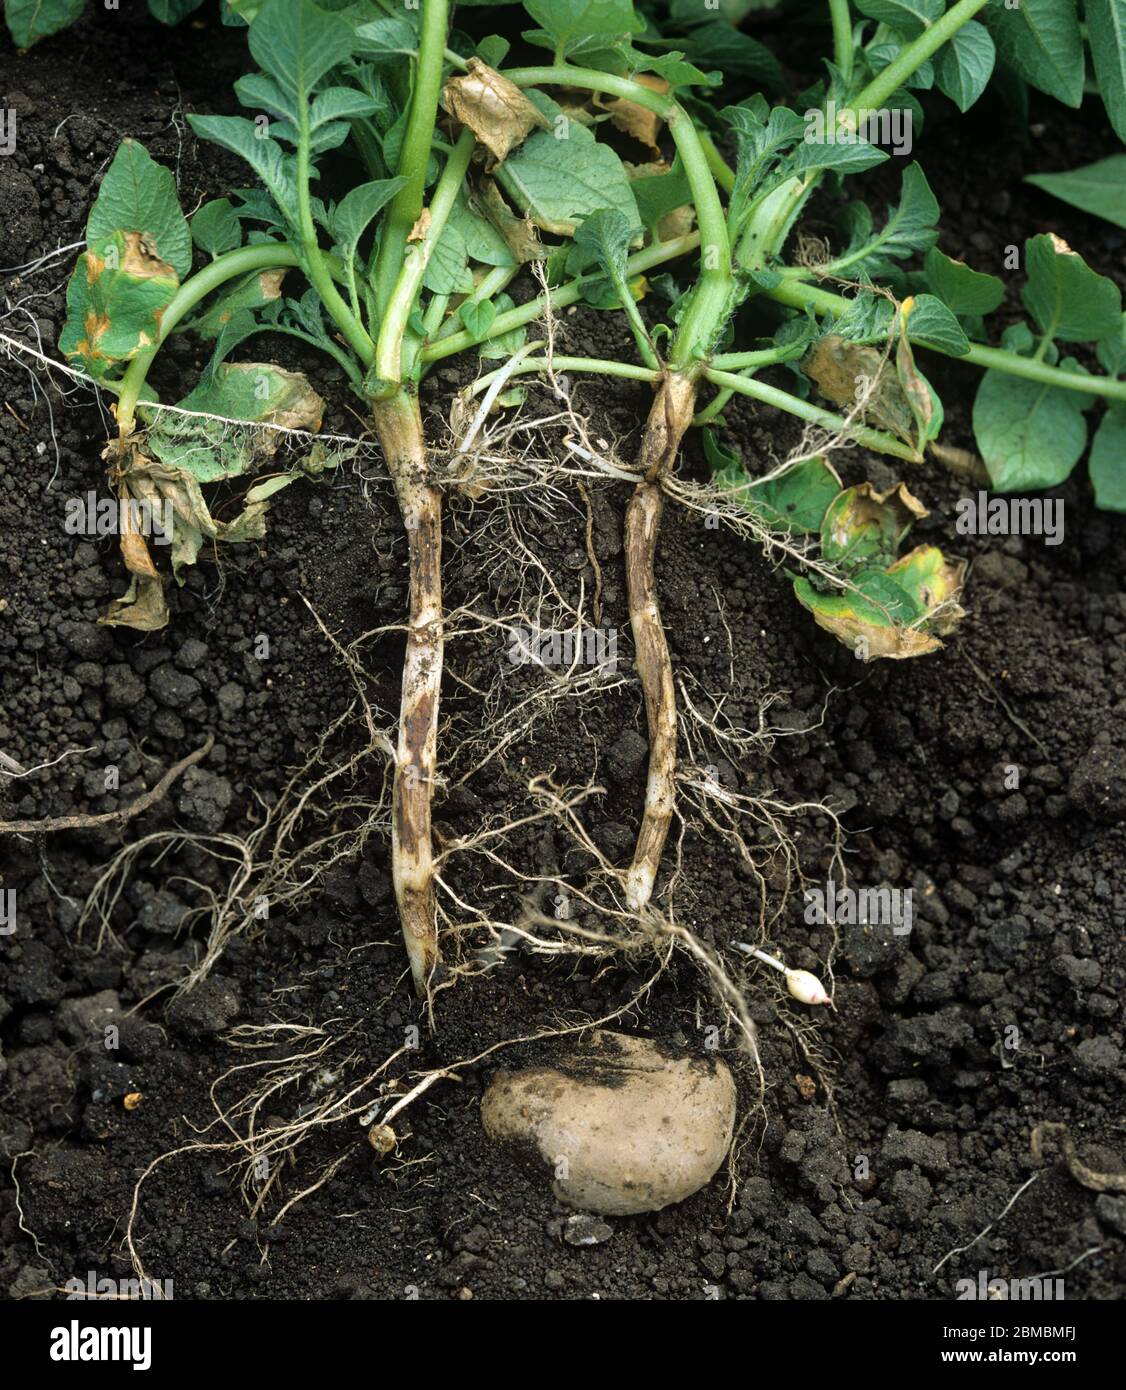 Stängel-Kanker (Rhizoctonia solani) Läsionen an der unteren Stammbasis und Wurzeln an einer reifenden Pflanze in einer Kartoffelernte Stockfoto